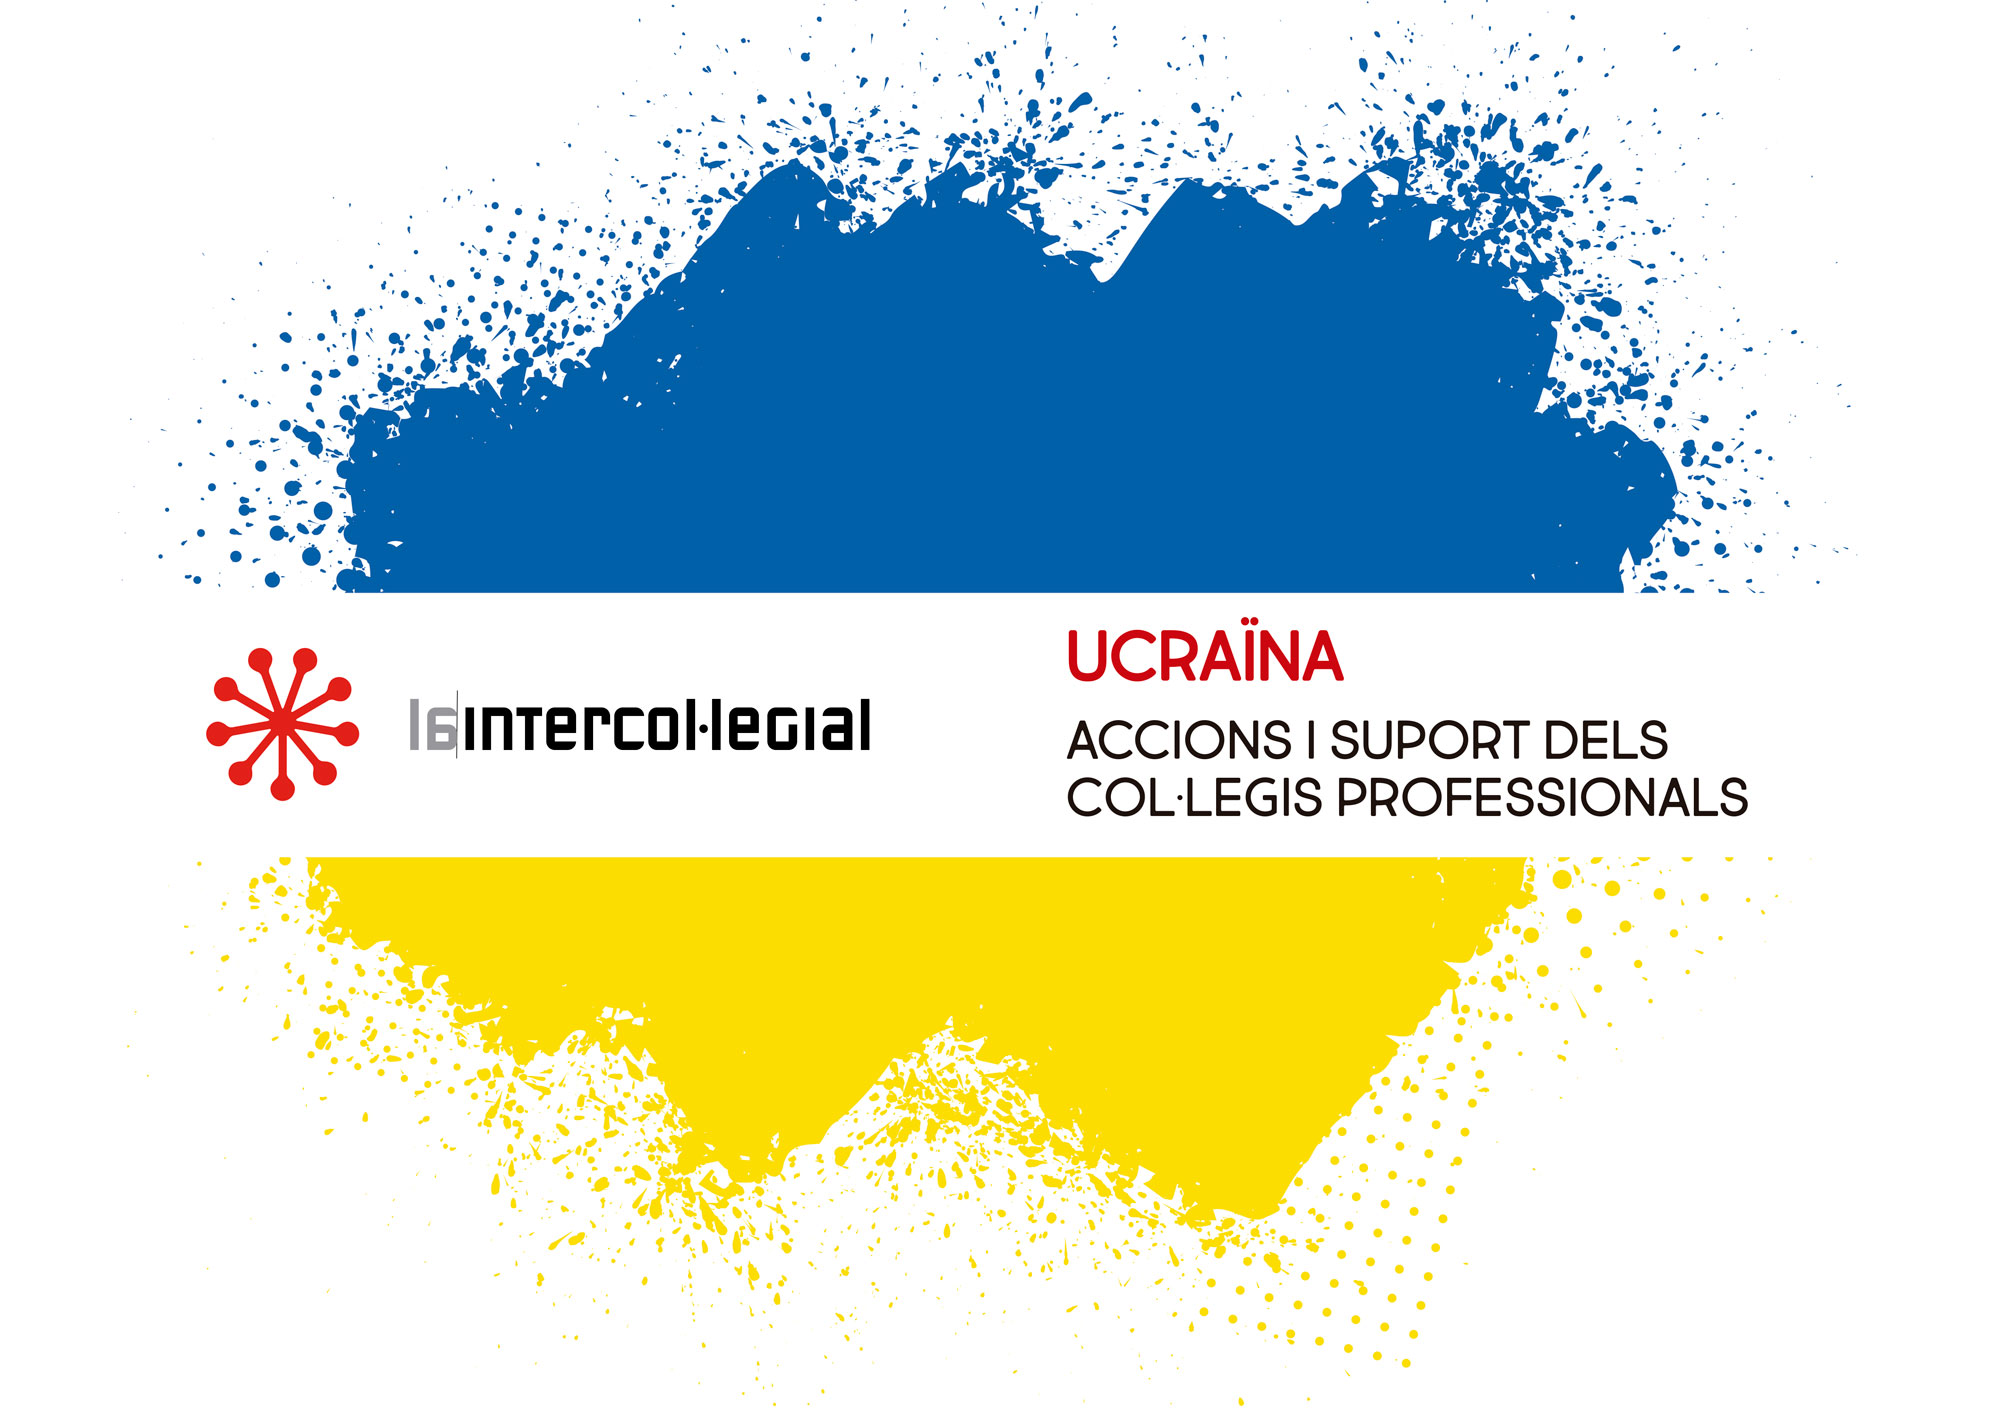 La Intercol·legial, amb Ucraïna